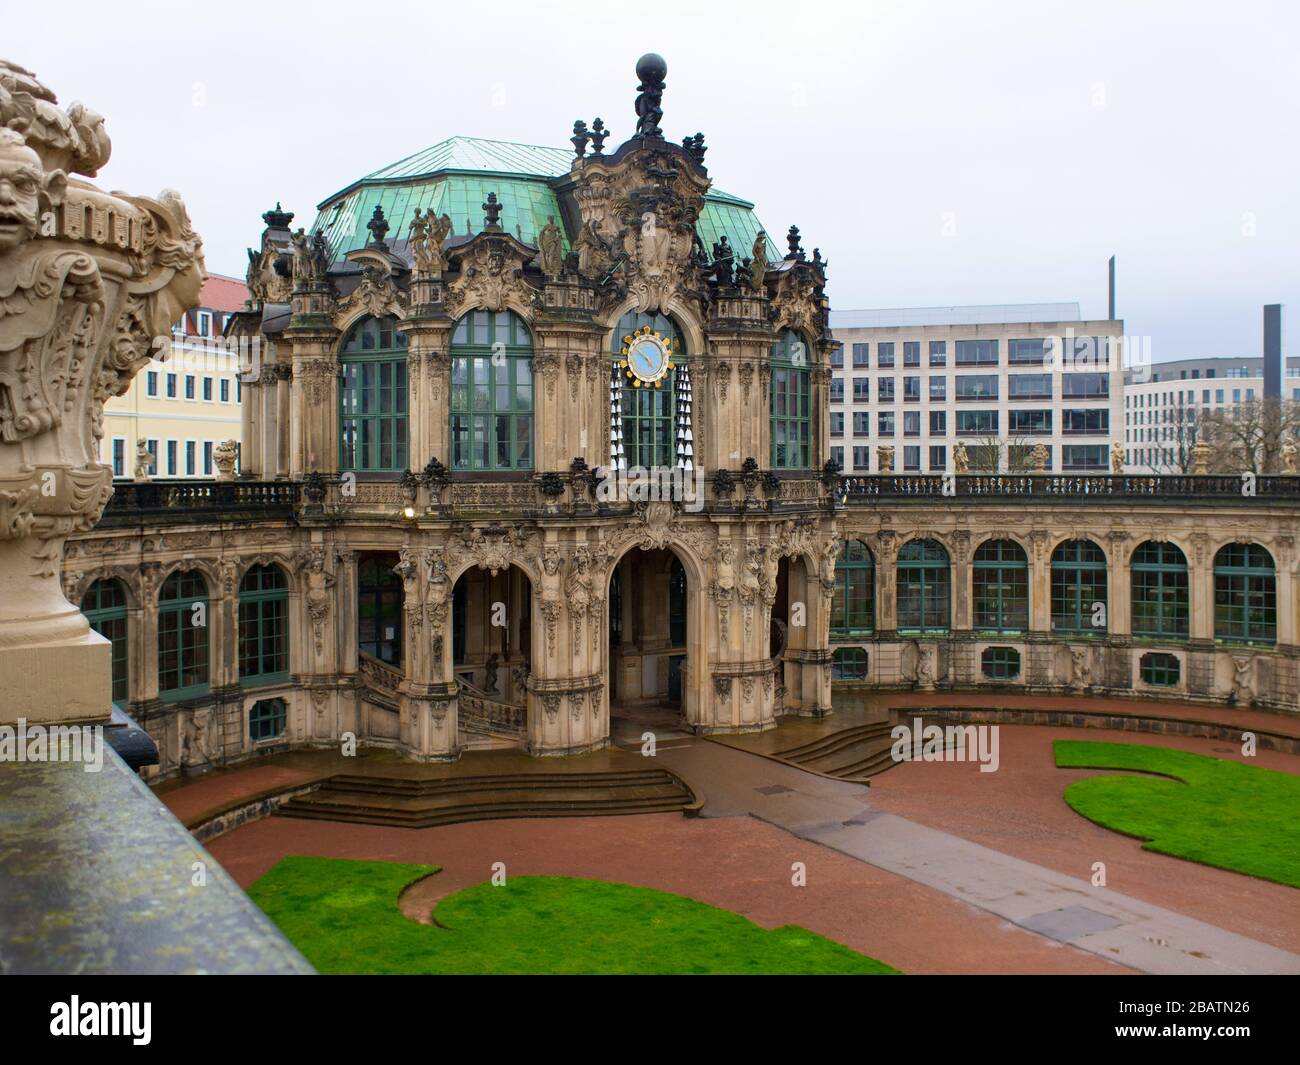 Dresden Zwinger während Coronavirus Lockdown 2020 Glockenspielpavillon Innenhof in der dresdner Altstadt Sehenswürdigkeit bei Regen Stock Photo